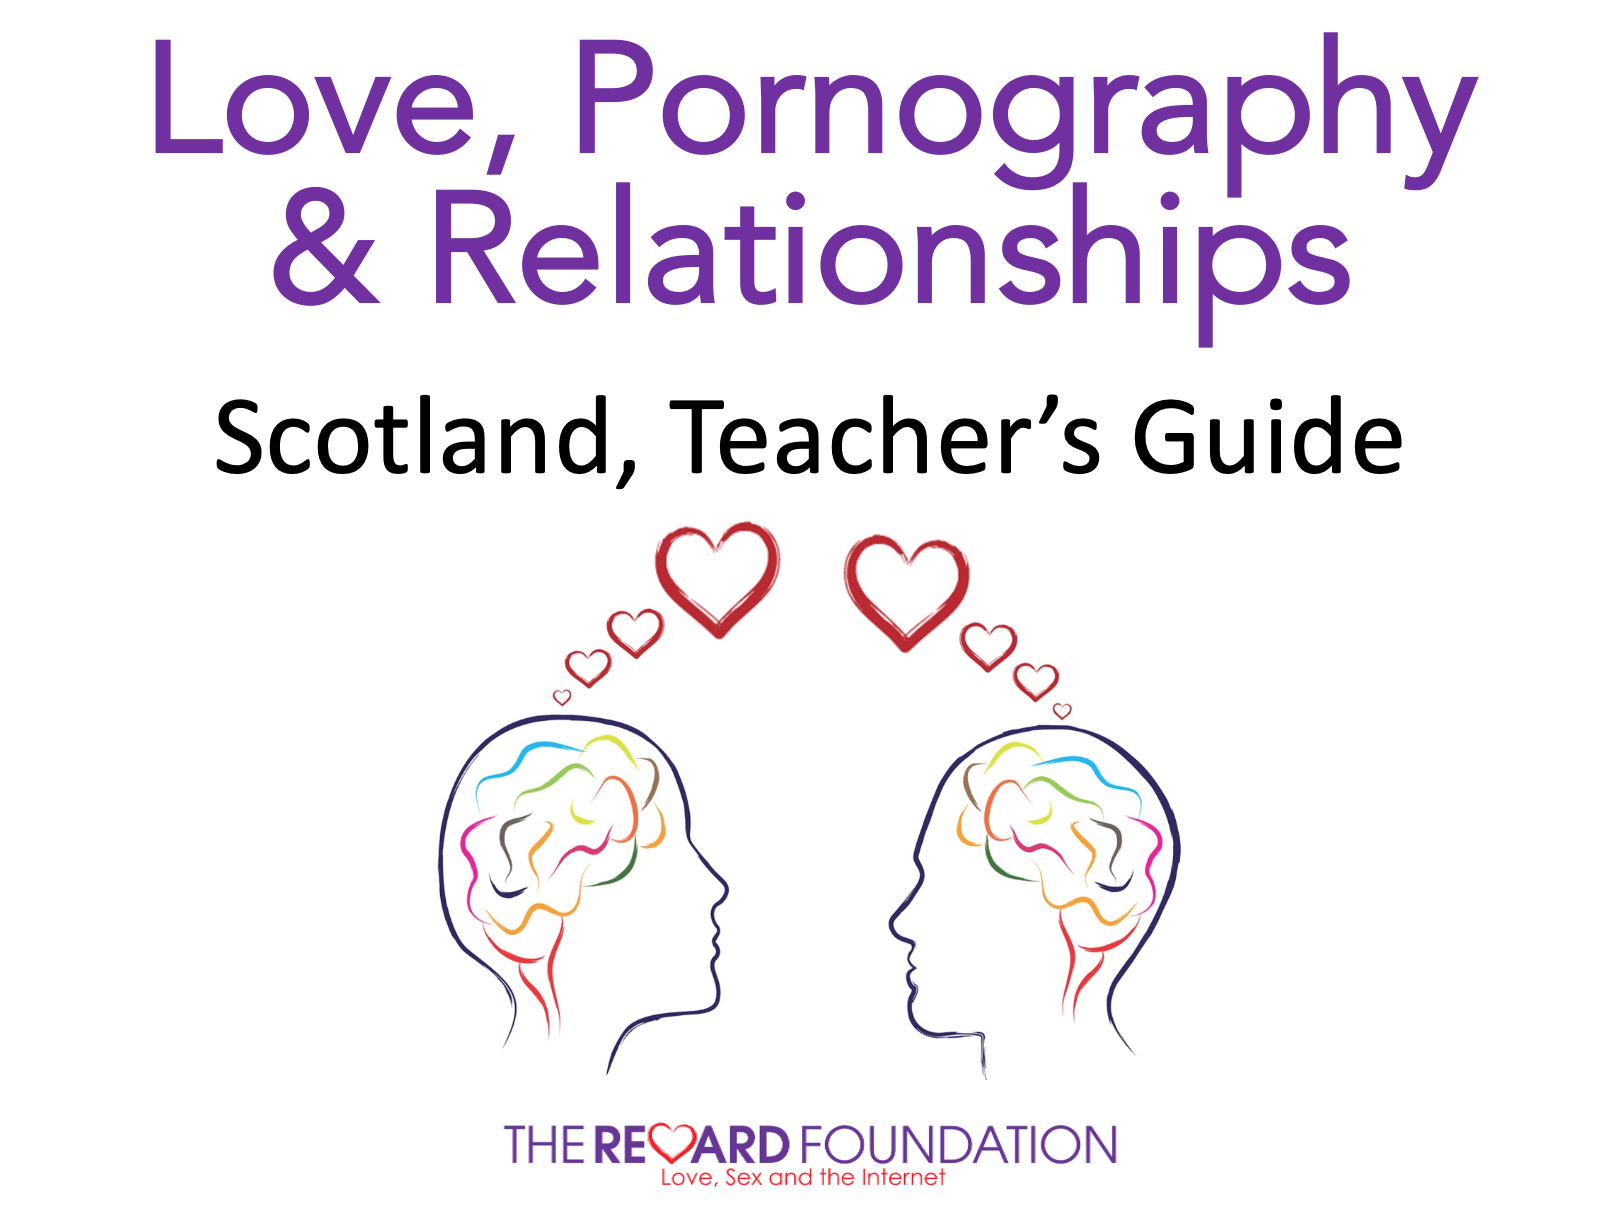 amour pornographie relations écossais